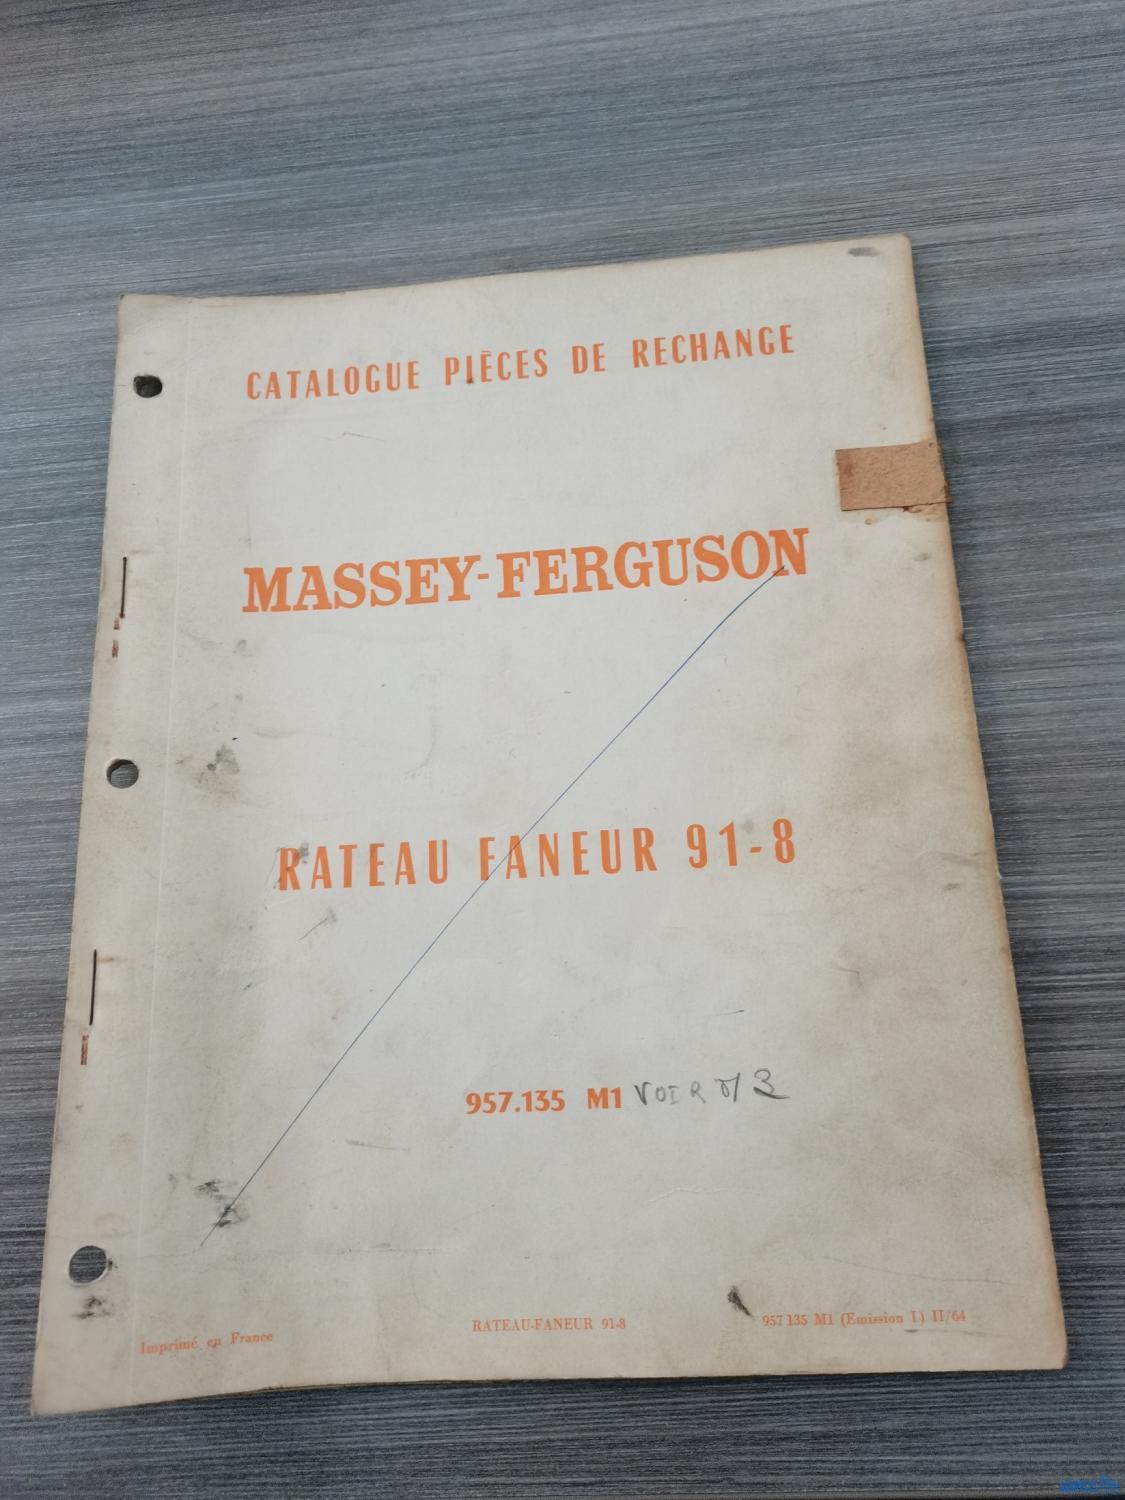 Catalogue de pièces détachées pour rateau faneur 91-8 Massey-Ferguson